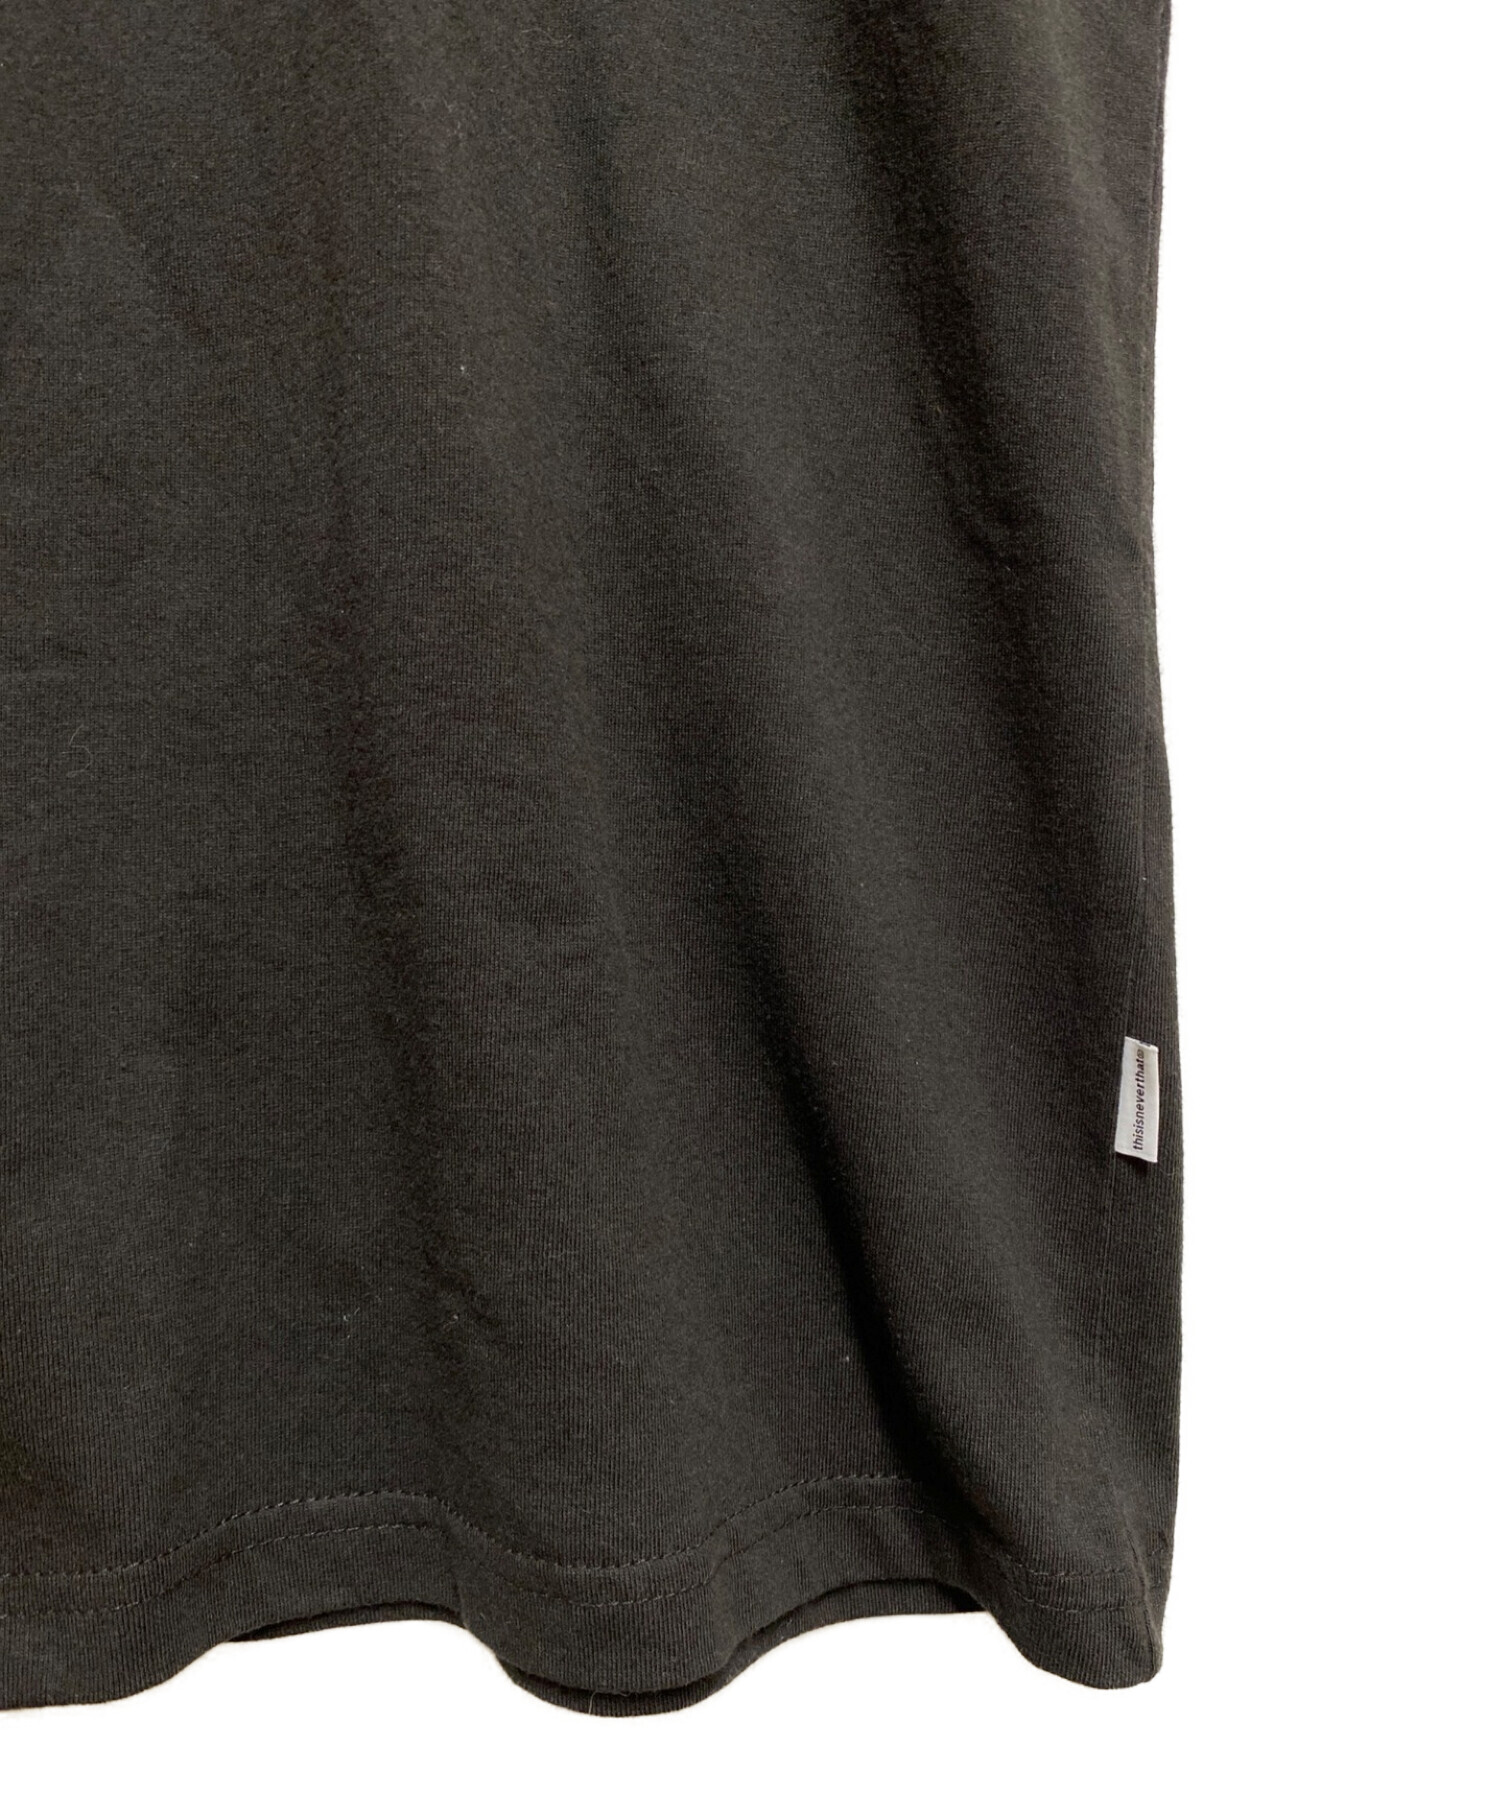 BlackEyePatch (ブラックアイパッチ) thisisneverthat (ディスイズネバーザット) コラボプリントTシャツ ブラック  サイズ:М 未使用品